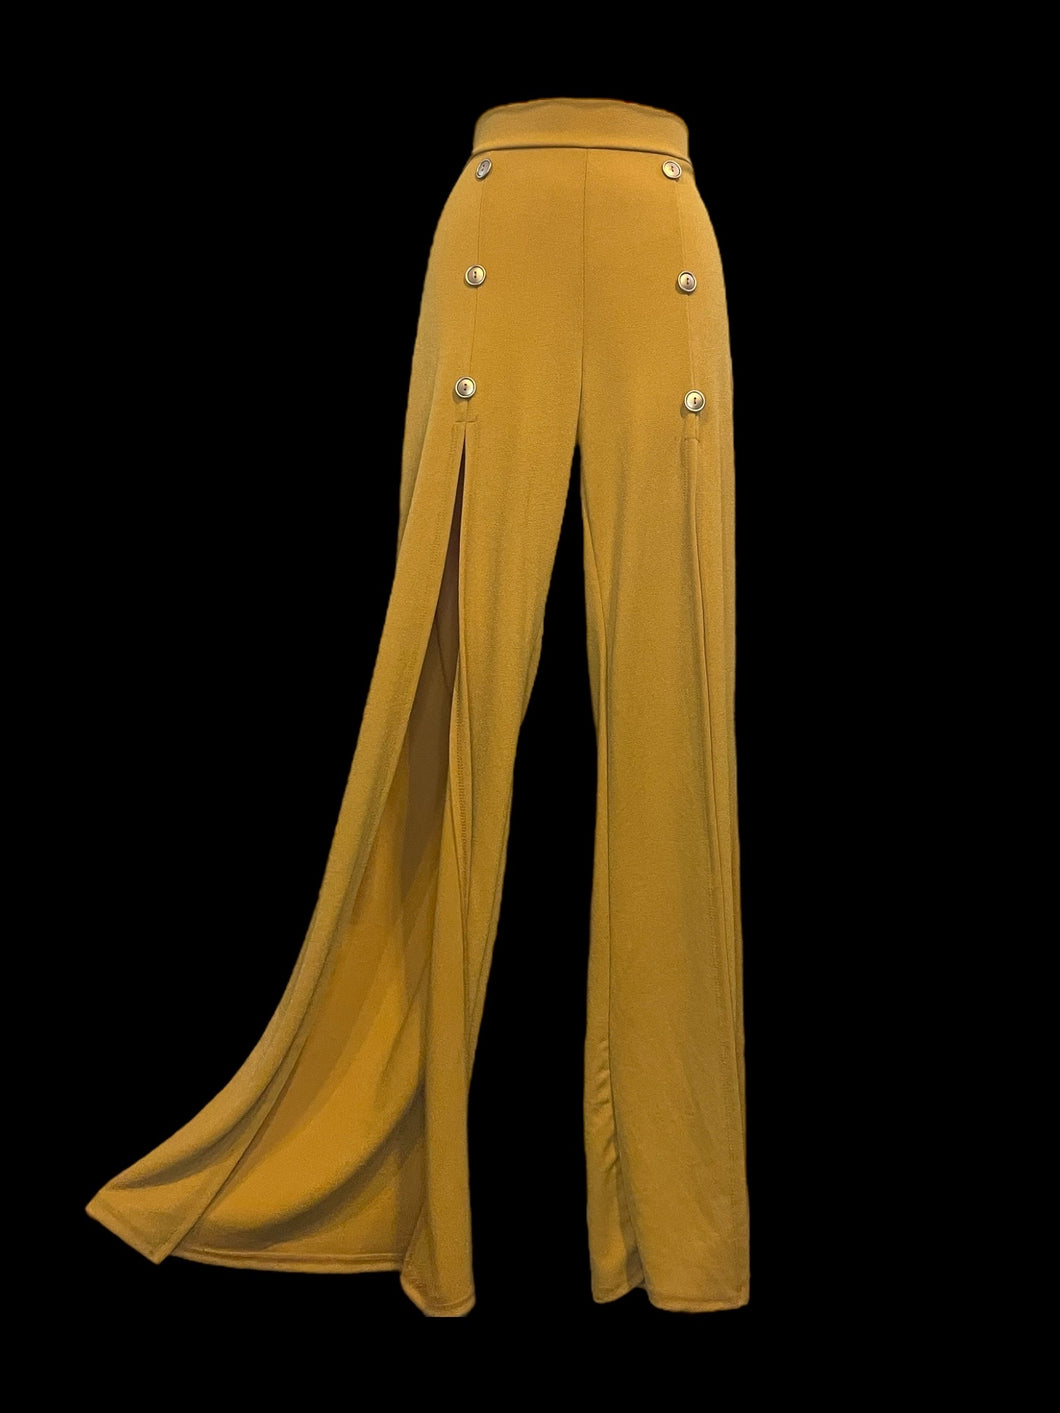 XL Yellow split leg pants w/ button details, & stretchy waist